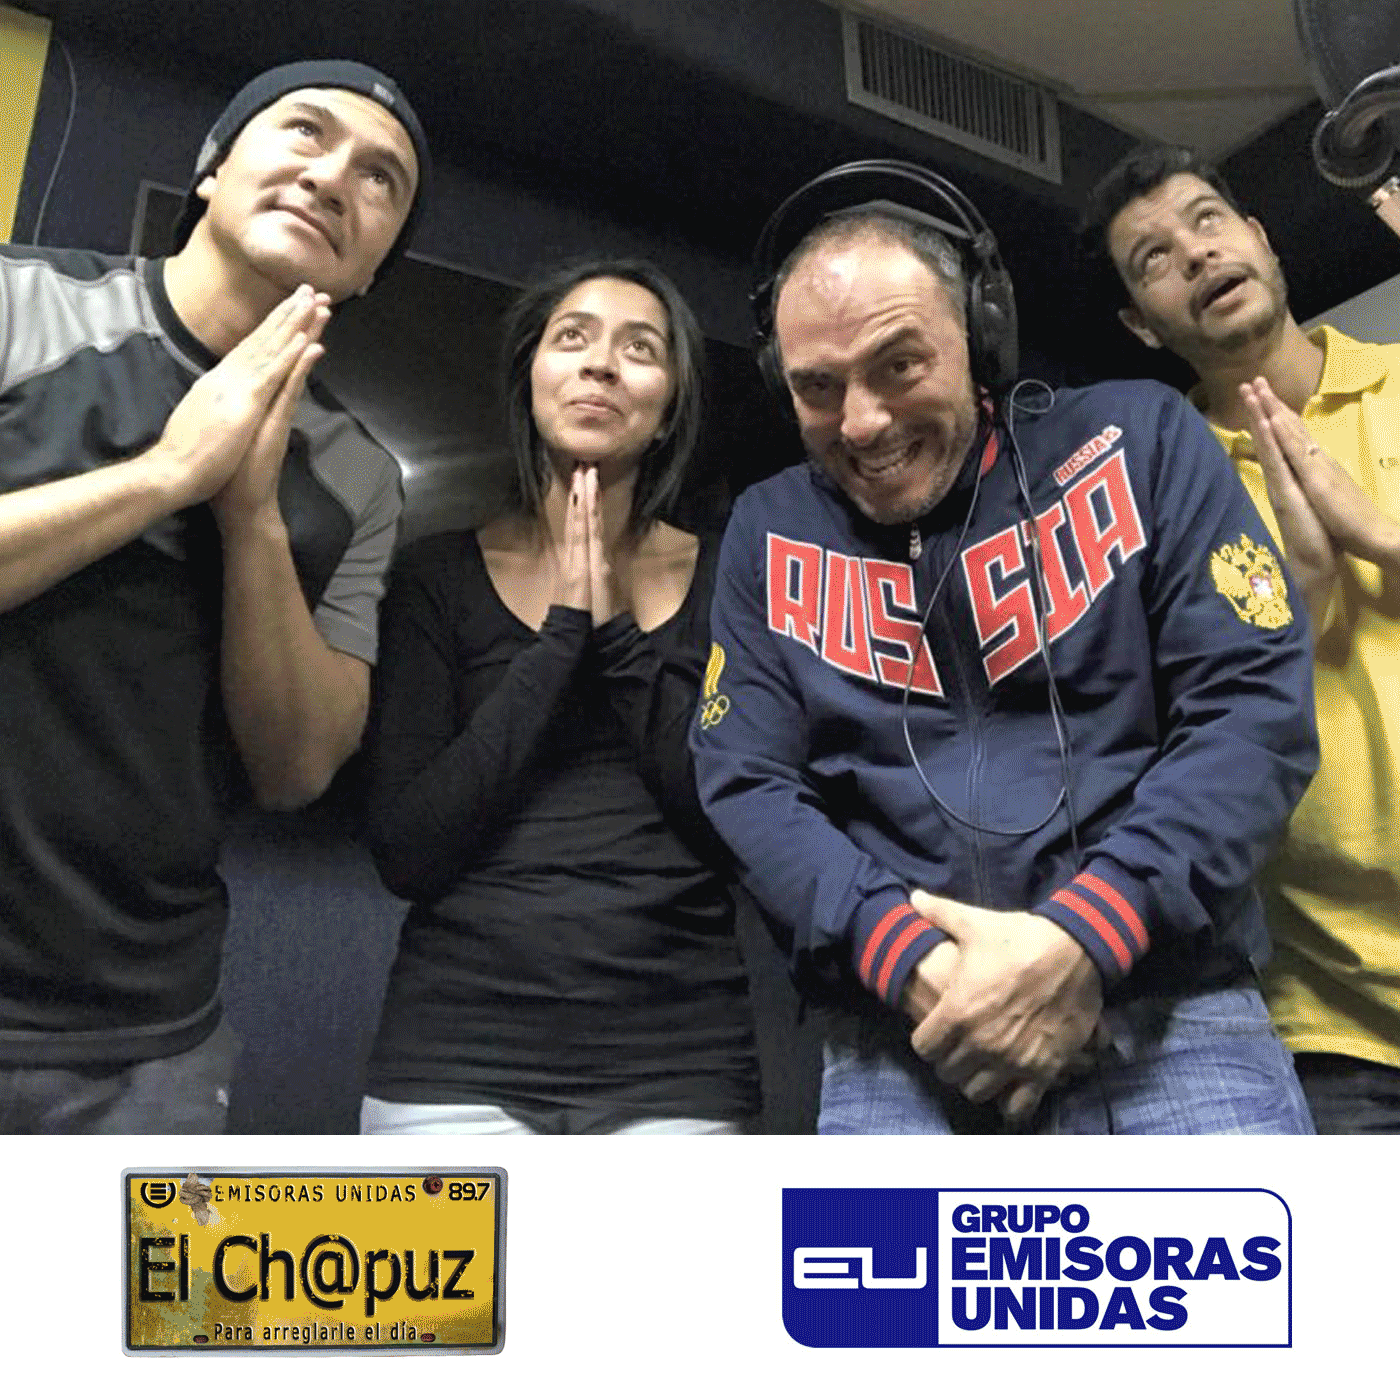  EC02 - El Chapuz - Emisoras unidas - #CosasBuenasQueParecenMalas